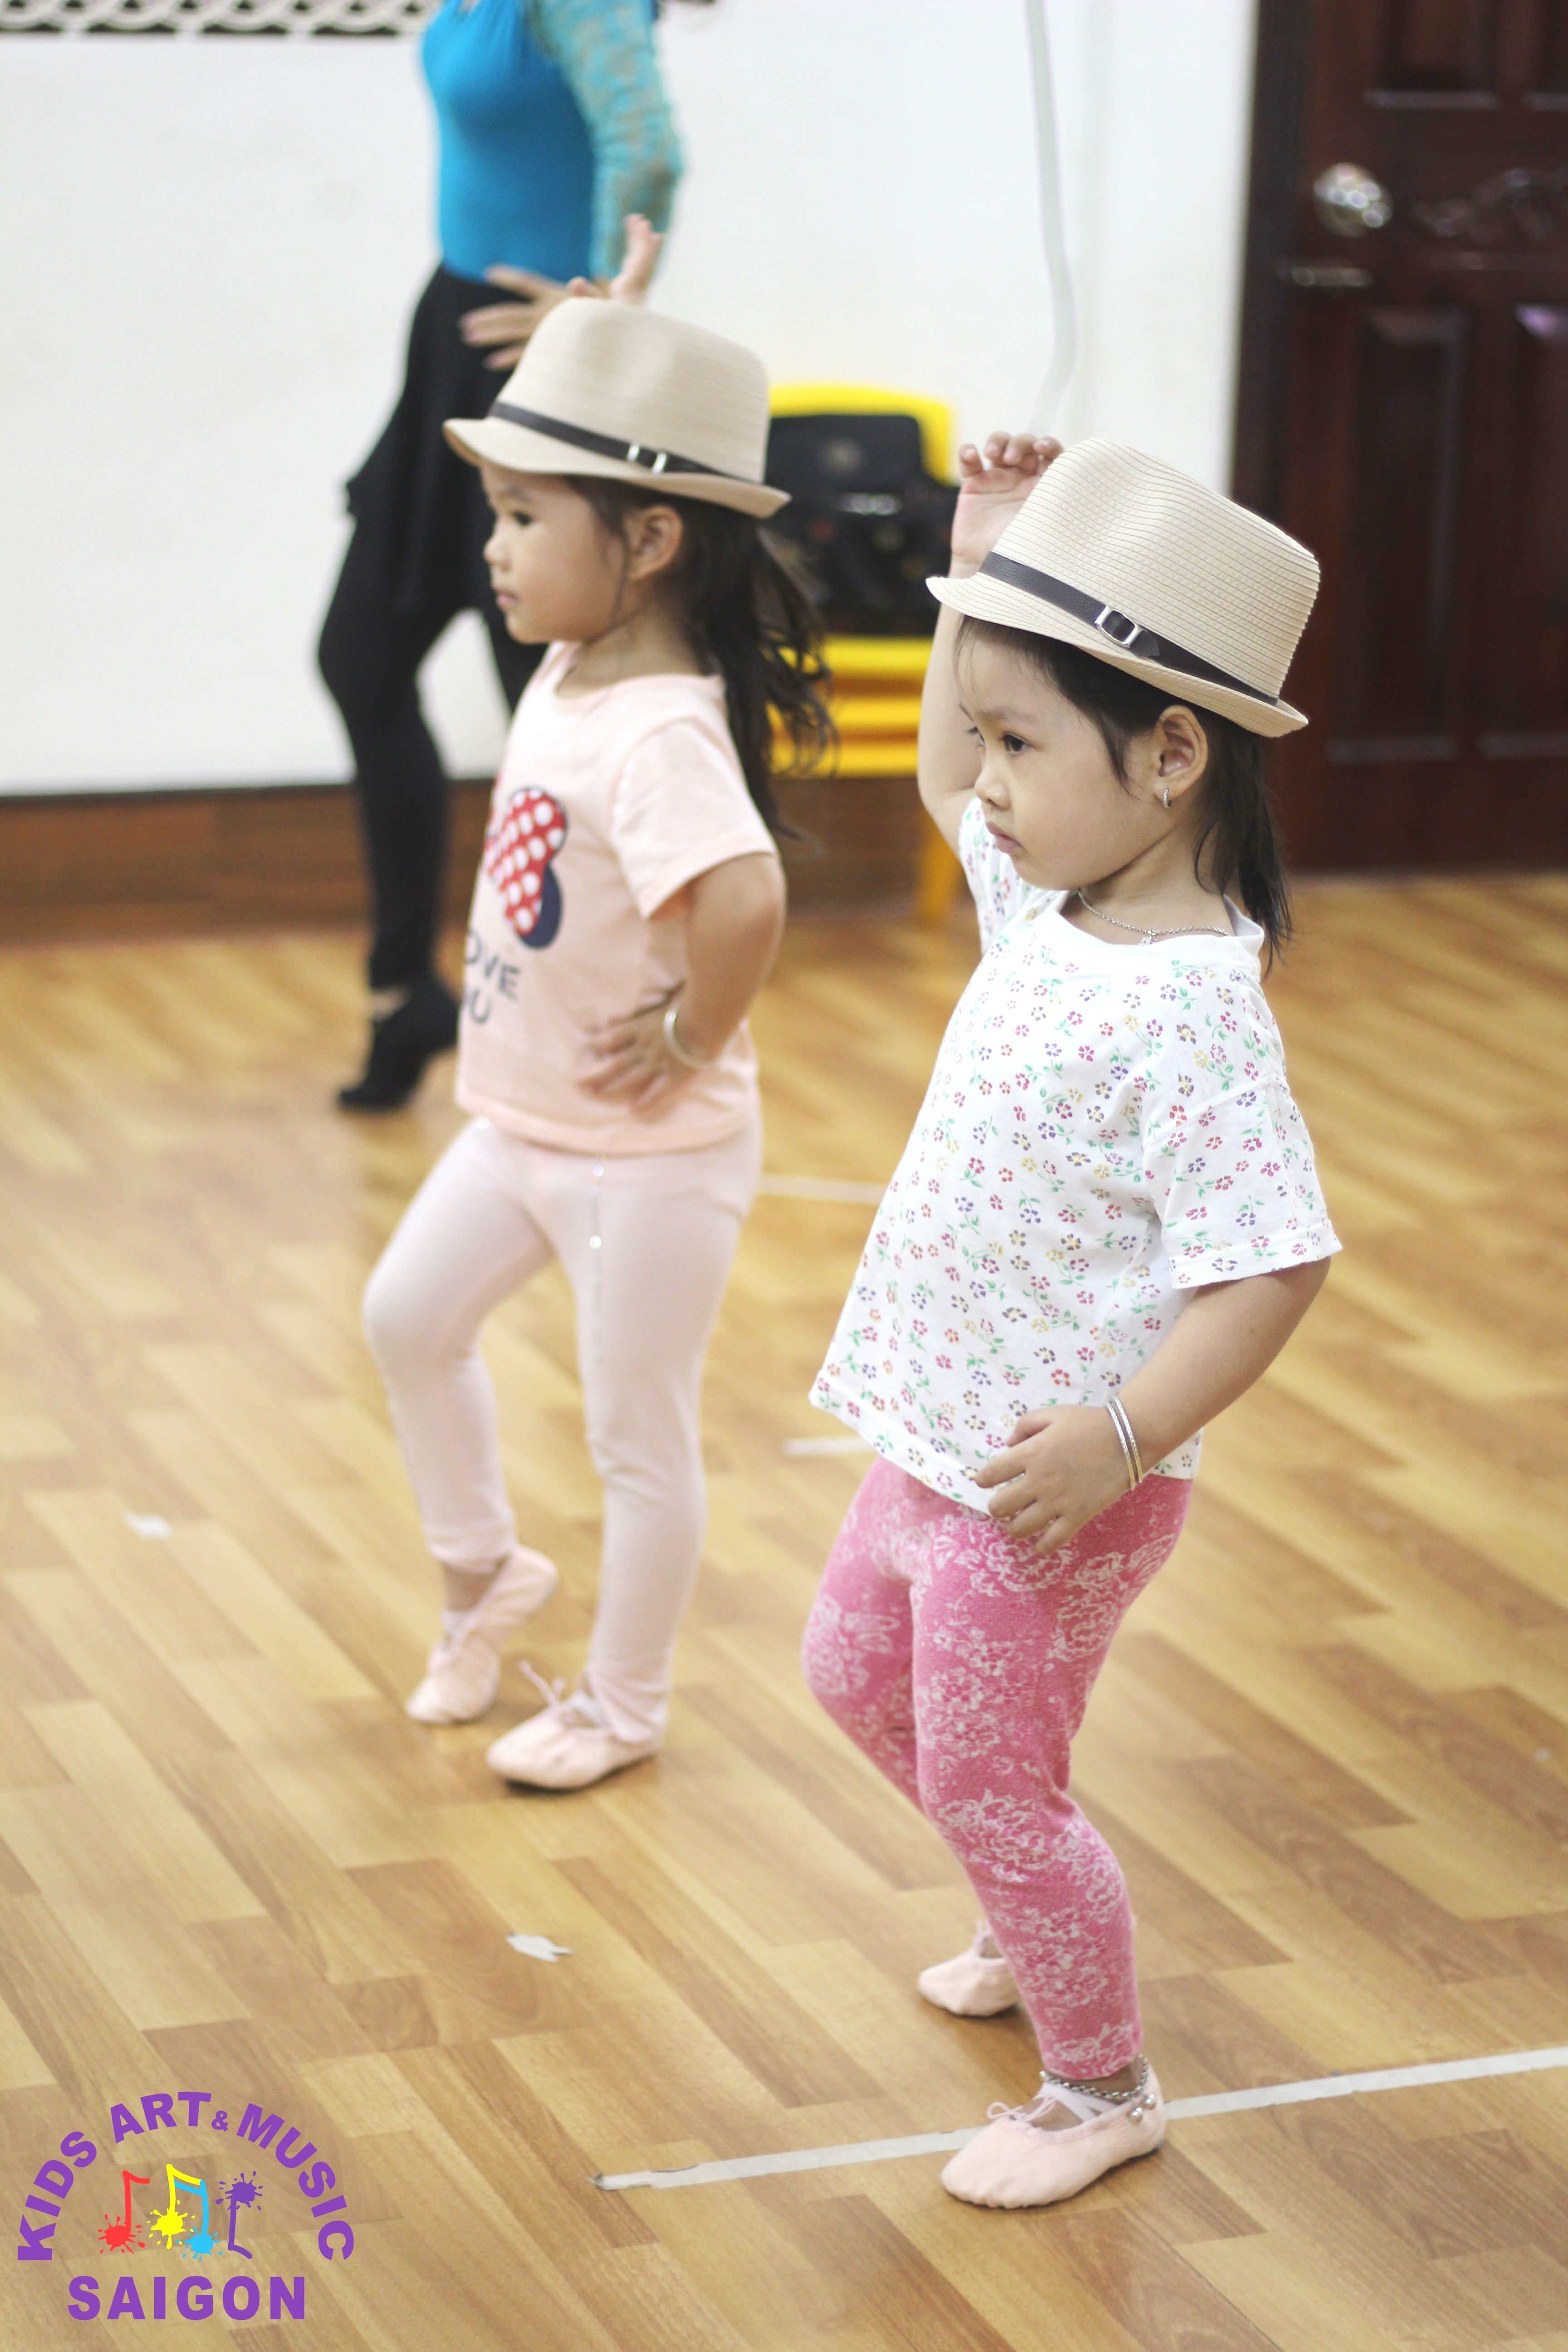 Rộn rã tiếng cười trẻ thơ tại các lớp học nhảy hiện đại ở Quận Tân Bình hình ảnh 1